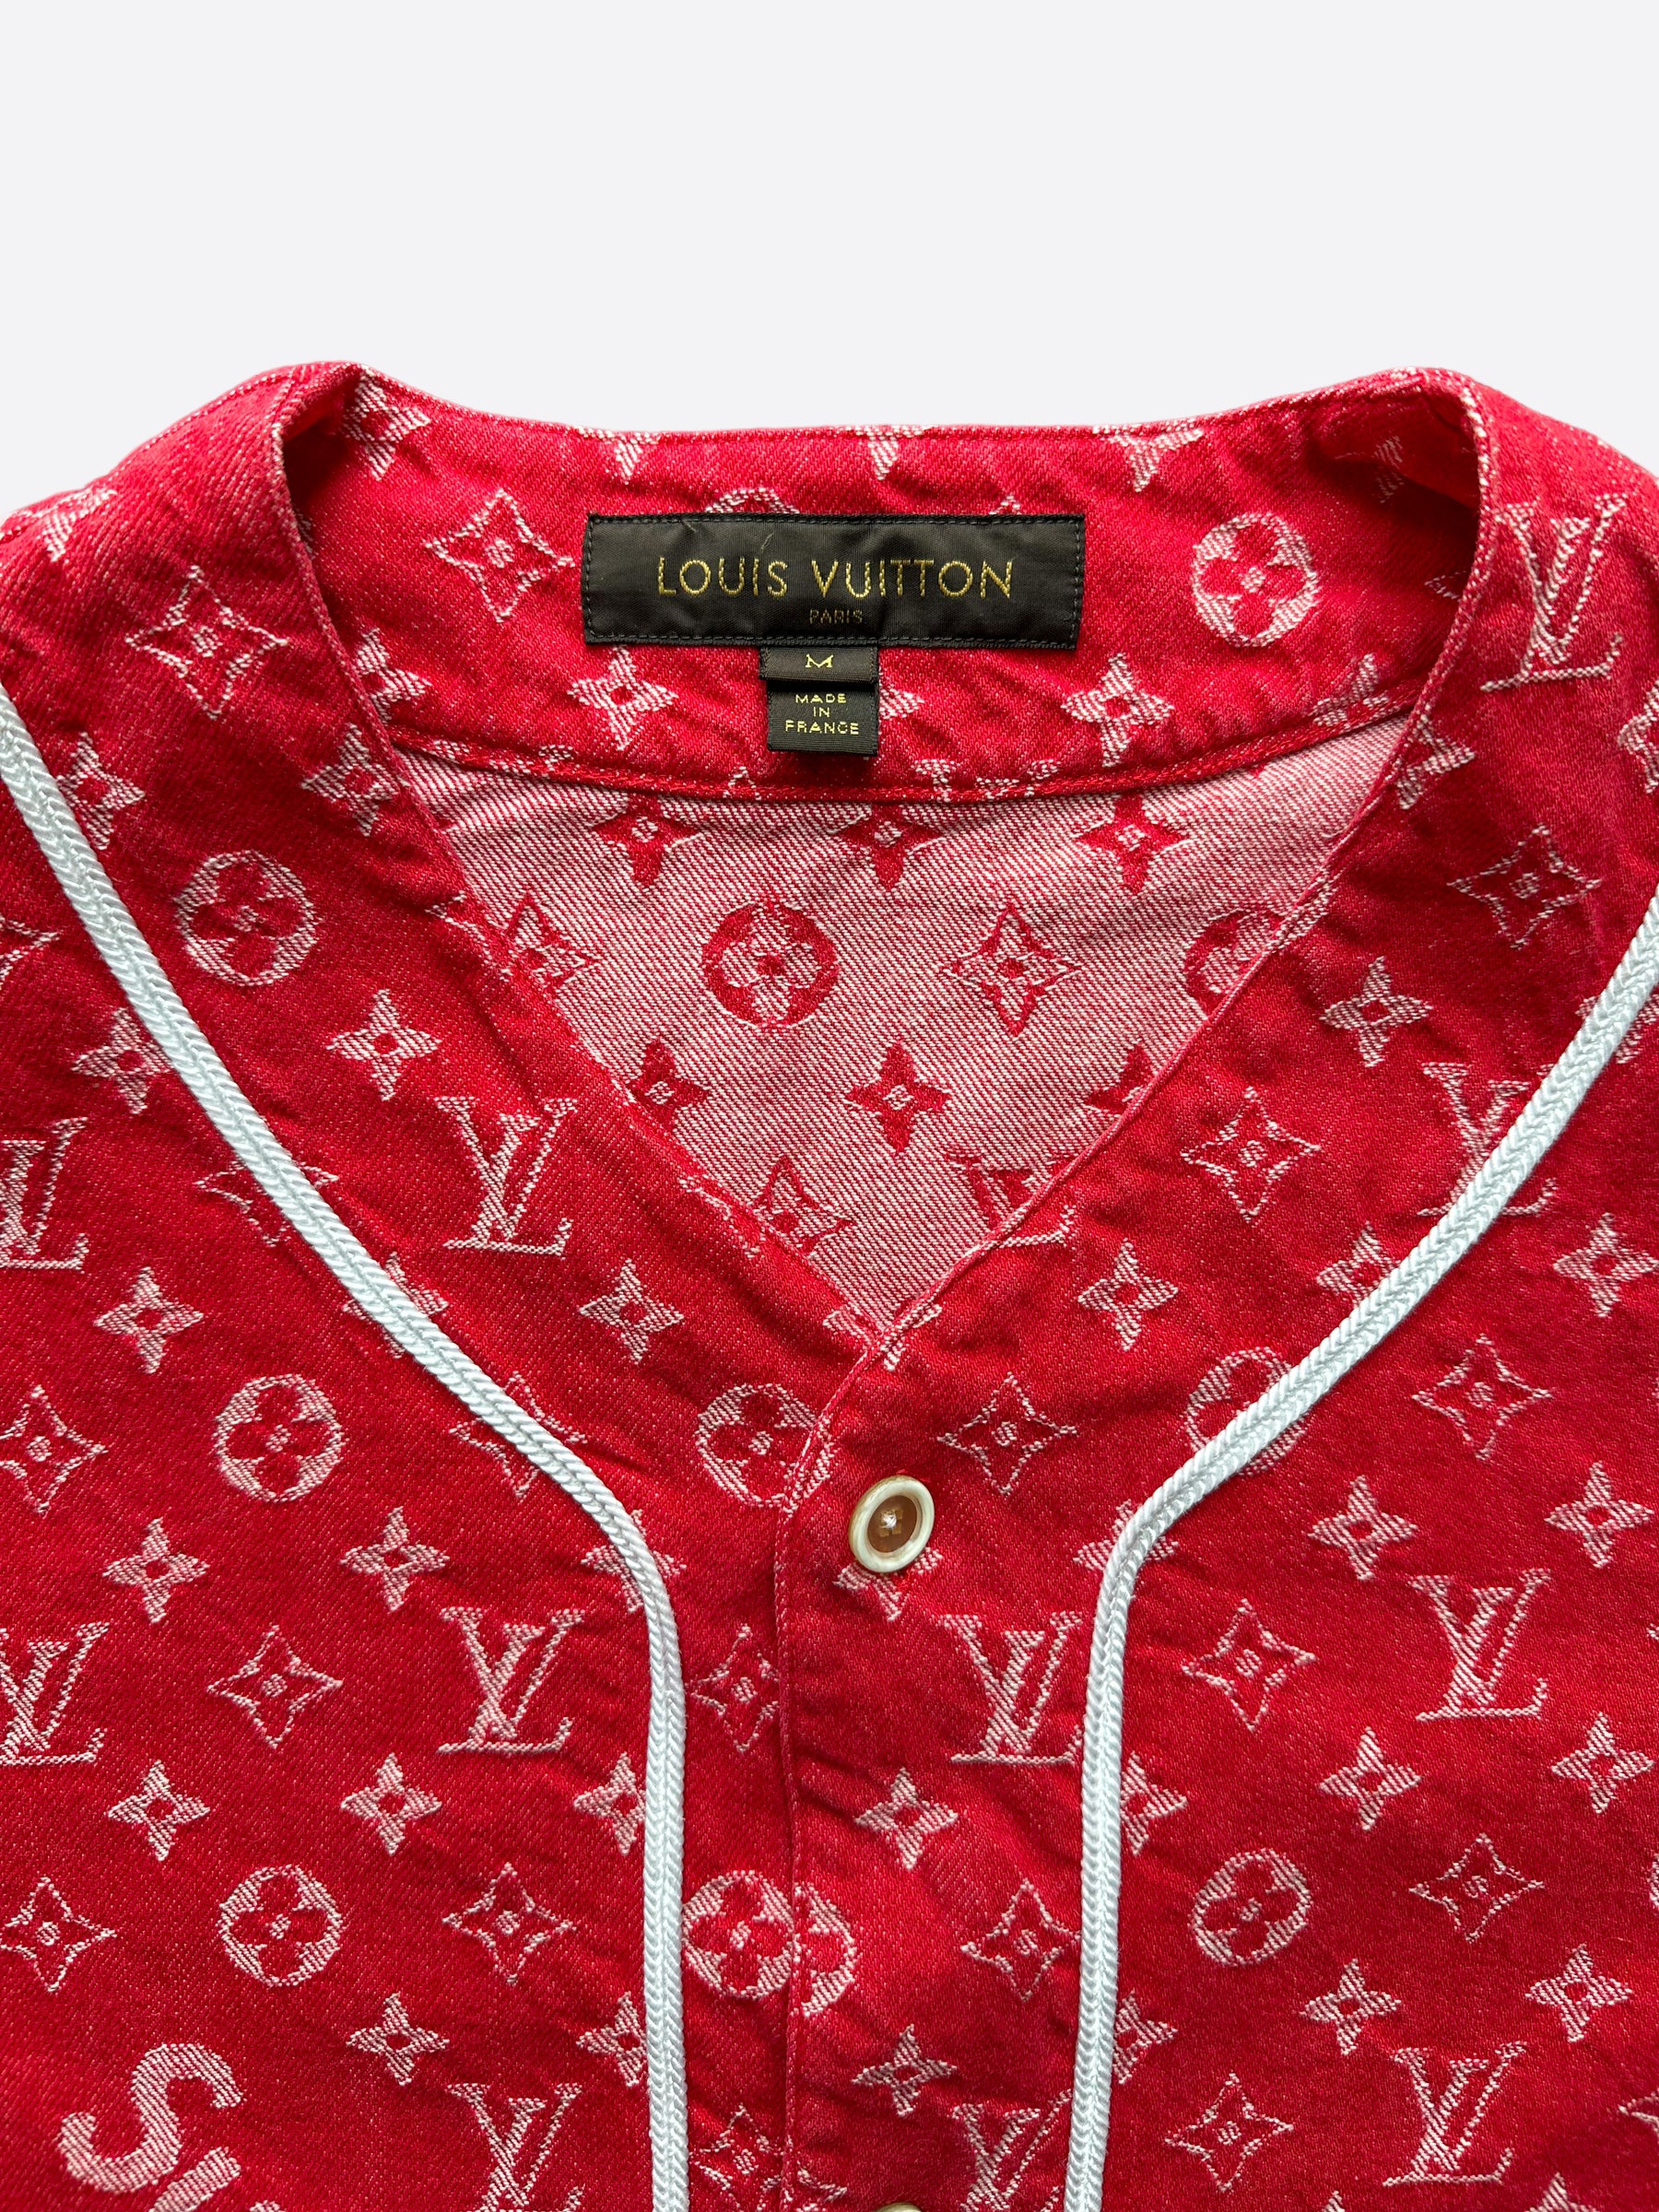 Louis Vuitton Supreme Red Monogram Baseball Jersey